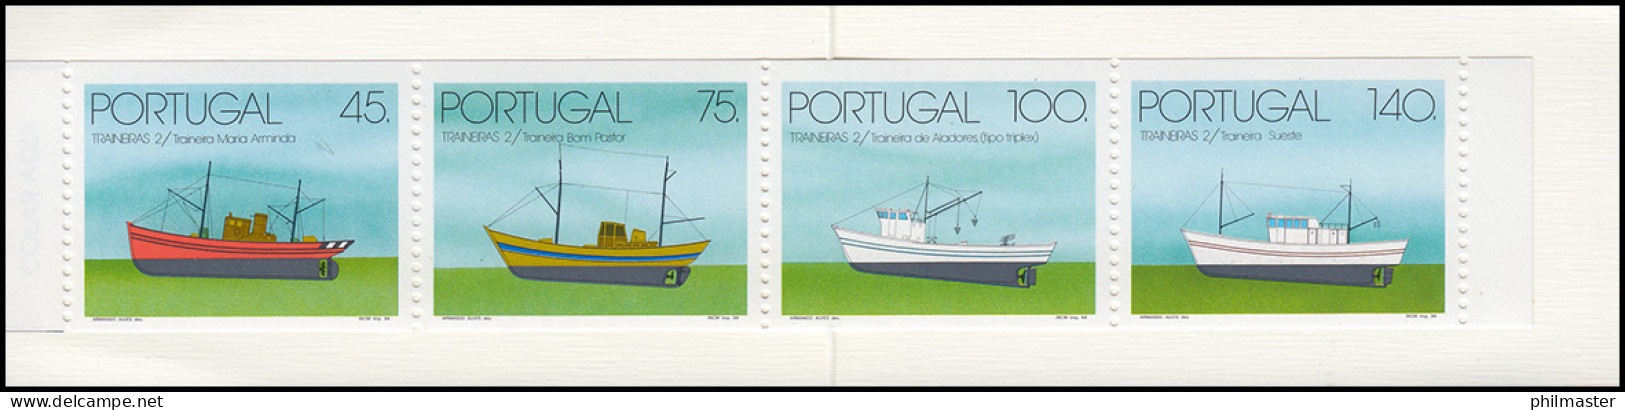 Portugal-Markenheftchen 11 Küstenfischerei Schleppnetzschiffe 1994, Postfrisch - Booklets